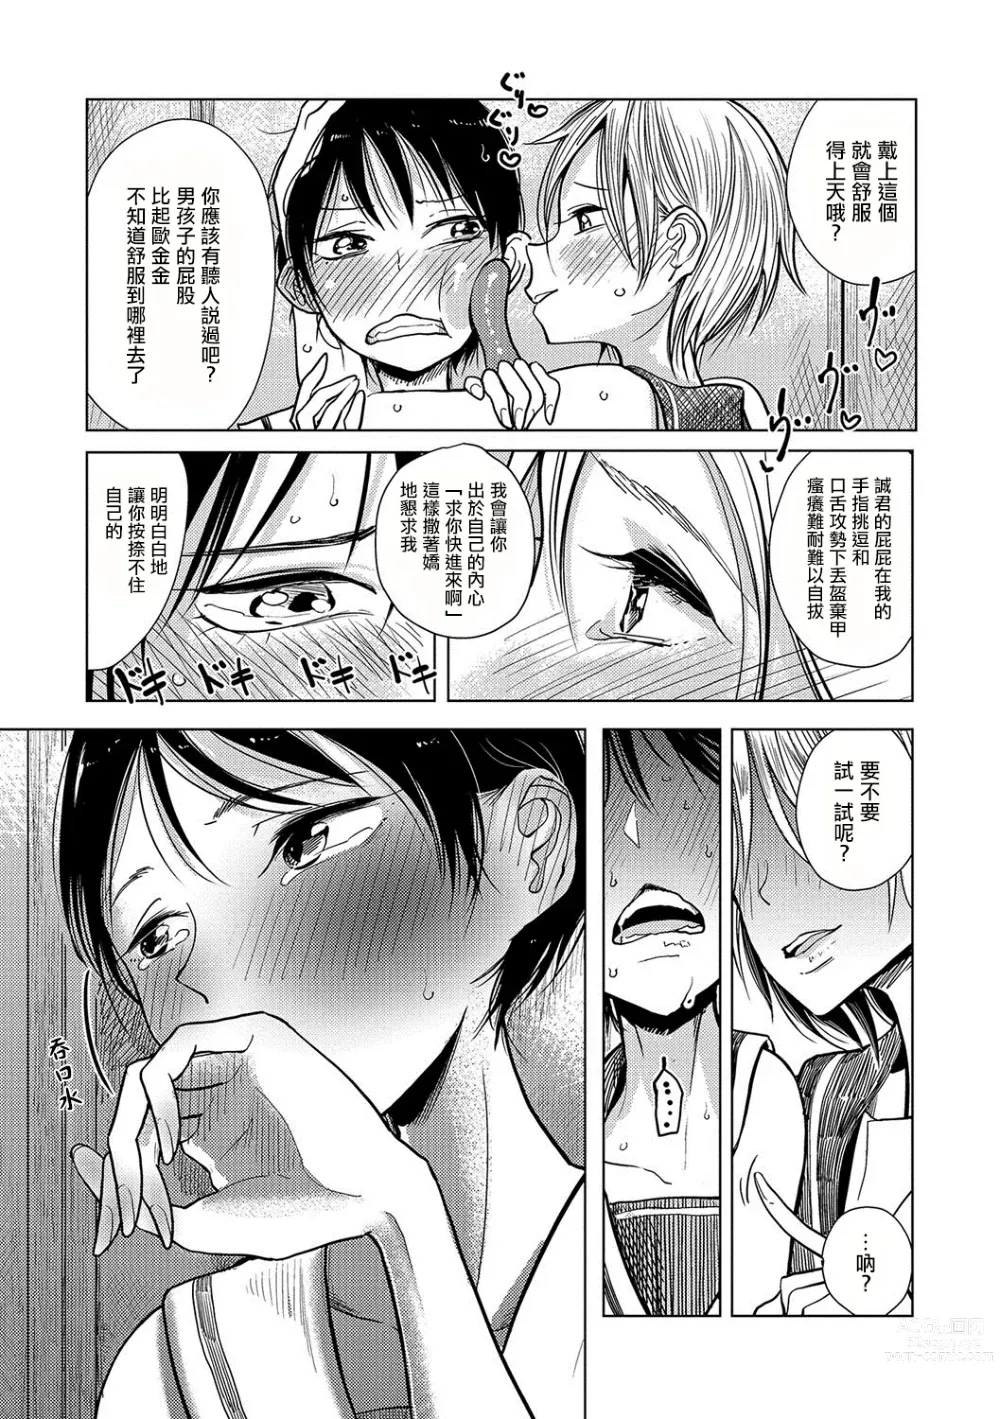 Page 26 of manga Bokura wa...